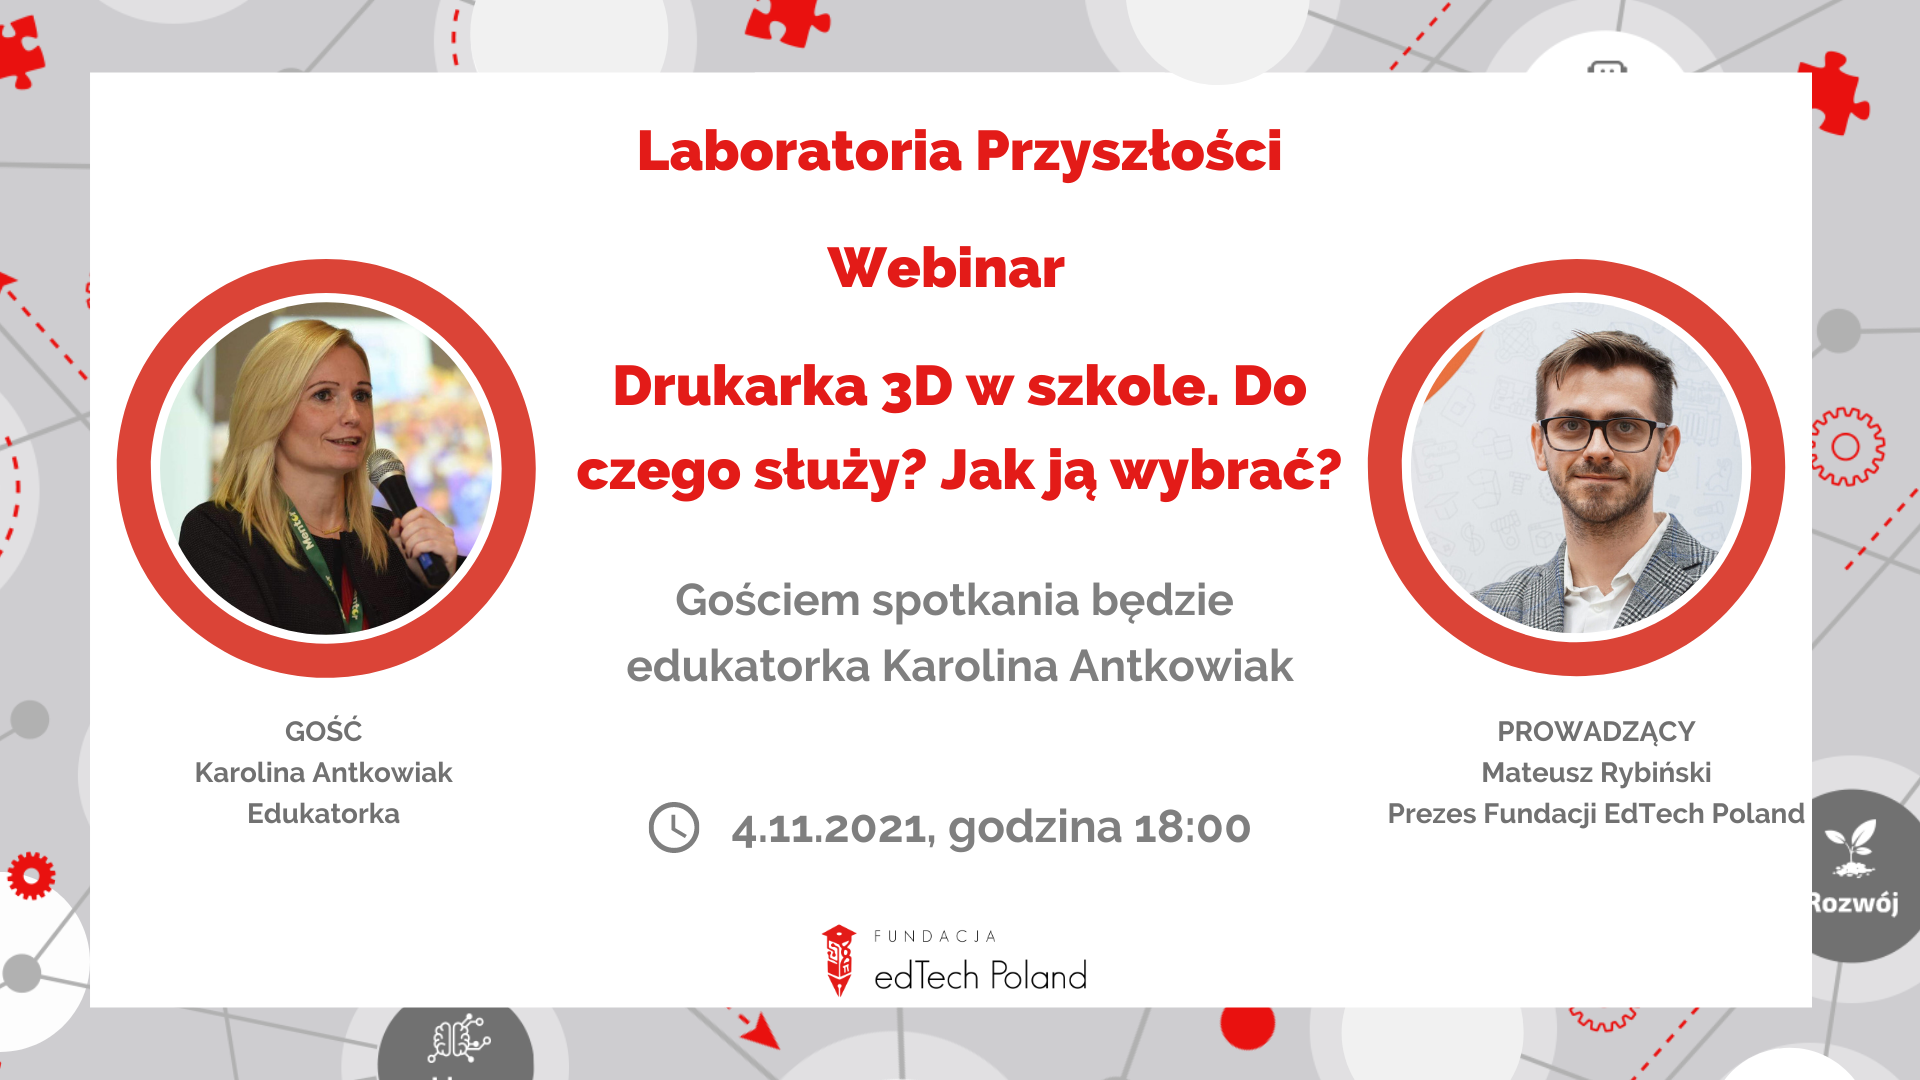 Webinar z Karoliną Antkowiak: Laboratoria Przyszłości – Drukarka 3D w szkole. Do czego służy? Jak wybrać?